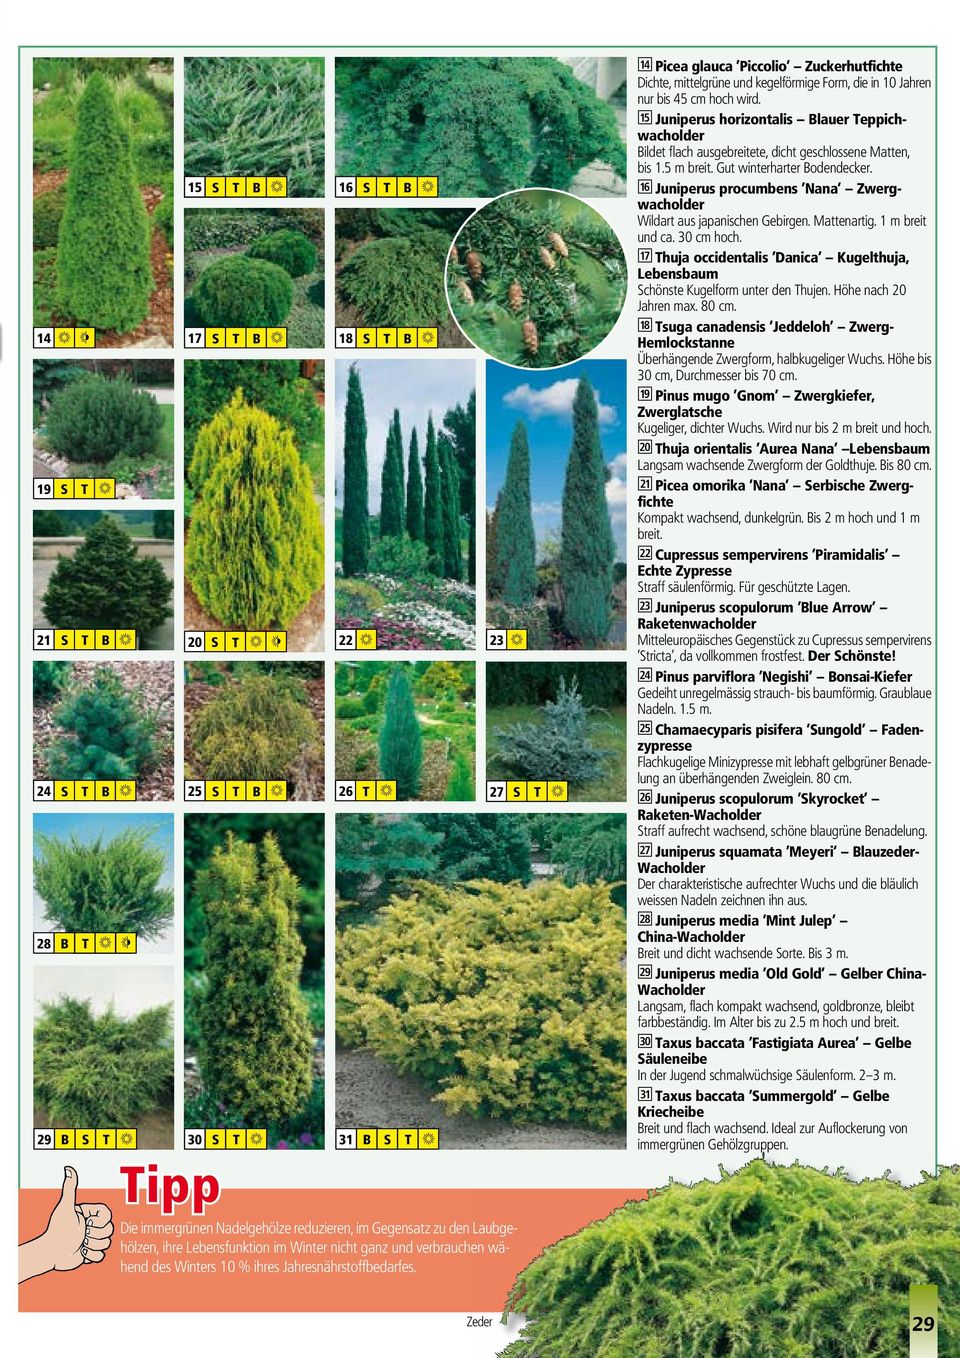 O Picea glauca Piccolio Zuckerhutfichte Dichte, mittelgrüne und kegelförmige Form, die in 10 Jahren nur bis 45 cm hoch wird.